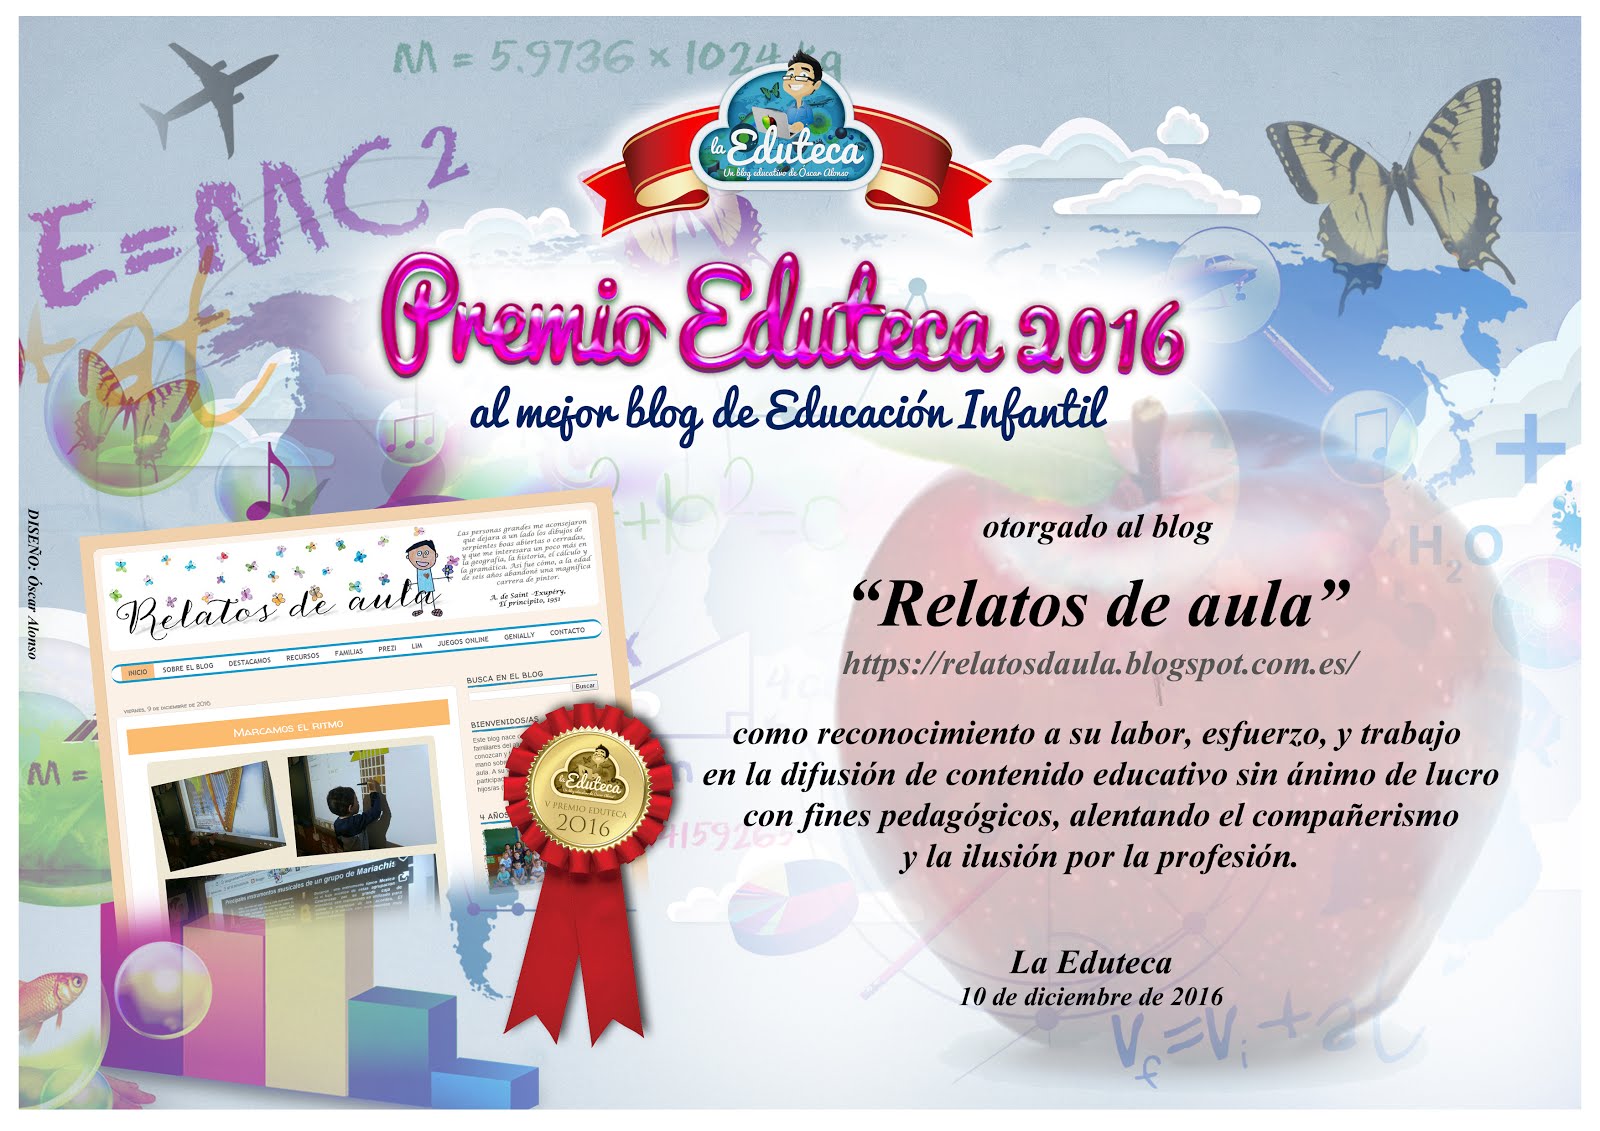 PREMIO EDUTECA 2016